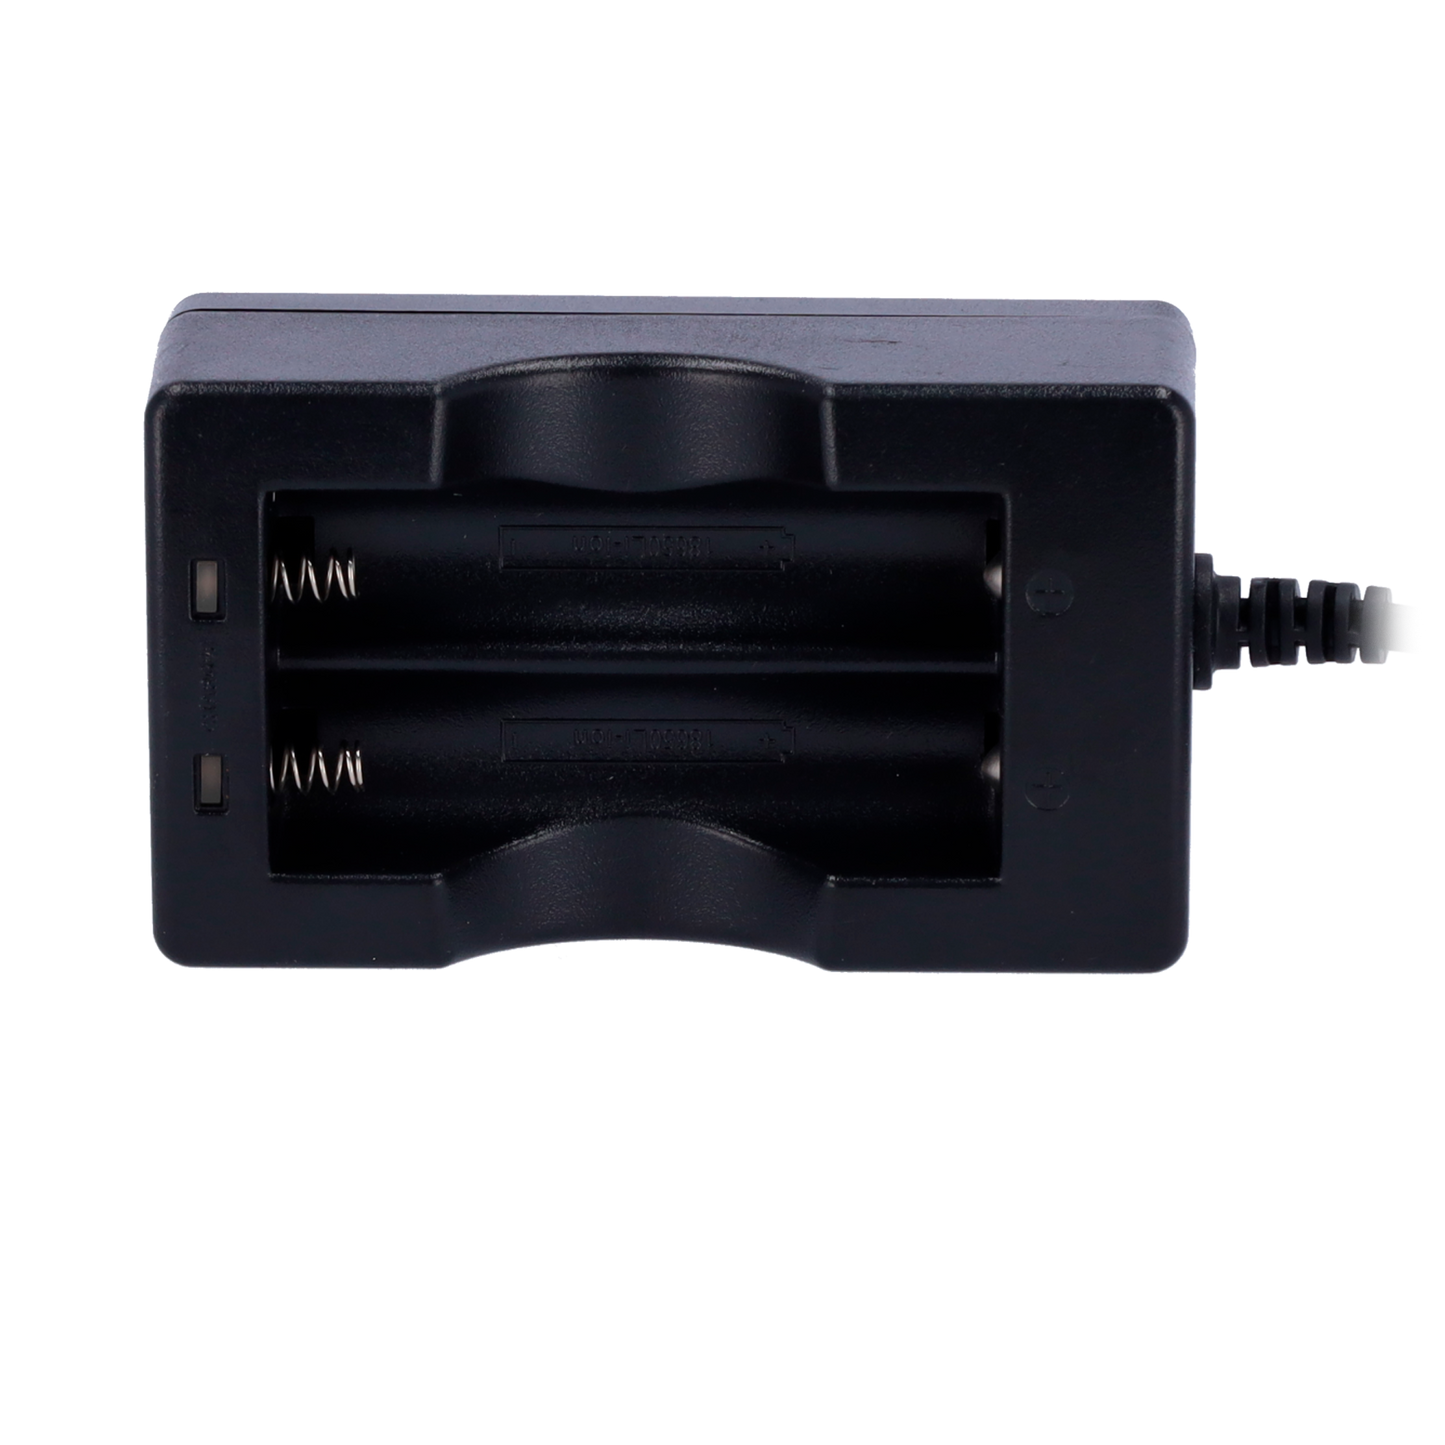 4.2V/1.0A - Detección precisa de voltaje - Protección contra sobrecarga y cortocircuito - Indicador LED de estado - Trifásico DC/VC/carga lenta - Temperatura: -10 ~ 40 ºC